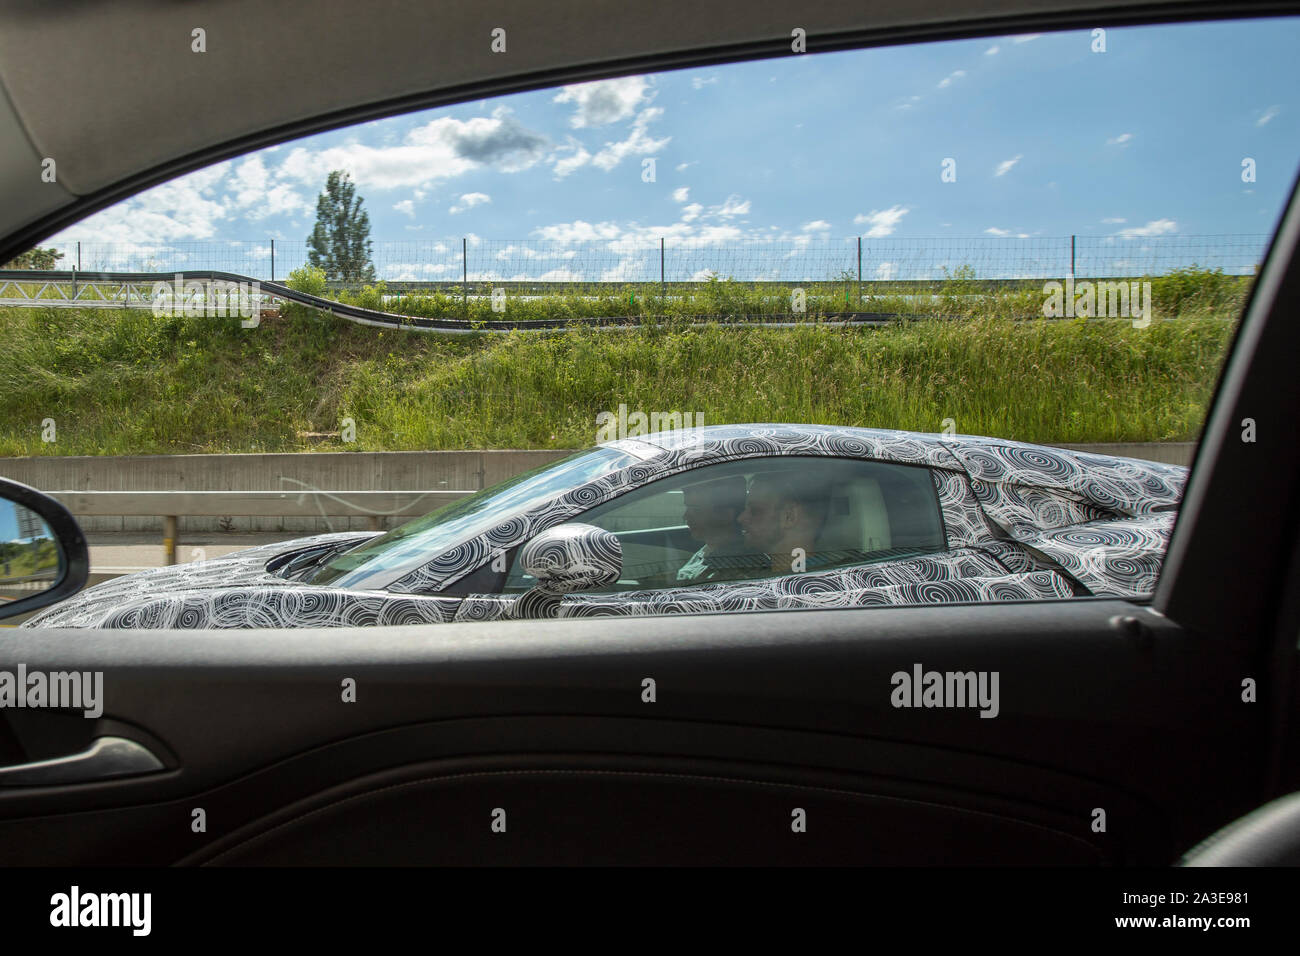 Un vehiche McLaren GT test prototype photographié faisant essais routiers en Suisse. L'extrémité arrière et l'admission d'air fortement avec les deux bandes camo camouflé et l'utilisation des panneaux. Les feux arrière sont cachés sous panneau mesh. Le nouveau modèle a d'abord annoncé à l'Auto Salon de Genève 2019, mais les détails au sujet de la voiture a été d'abord publié en mai la même année. Ces images ont été prises en juin 2019 et diffère de l'heure in ayant sauté sur le panneaux supplémentaires et le côté arrière, ainsi que des feux arrière camouflées. Le contour de la queue sont visibles à travers la bande. Banque D'Images